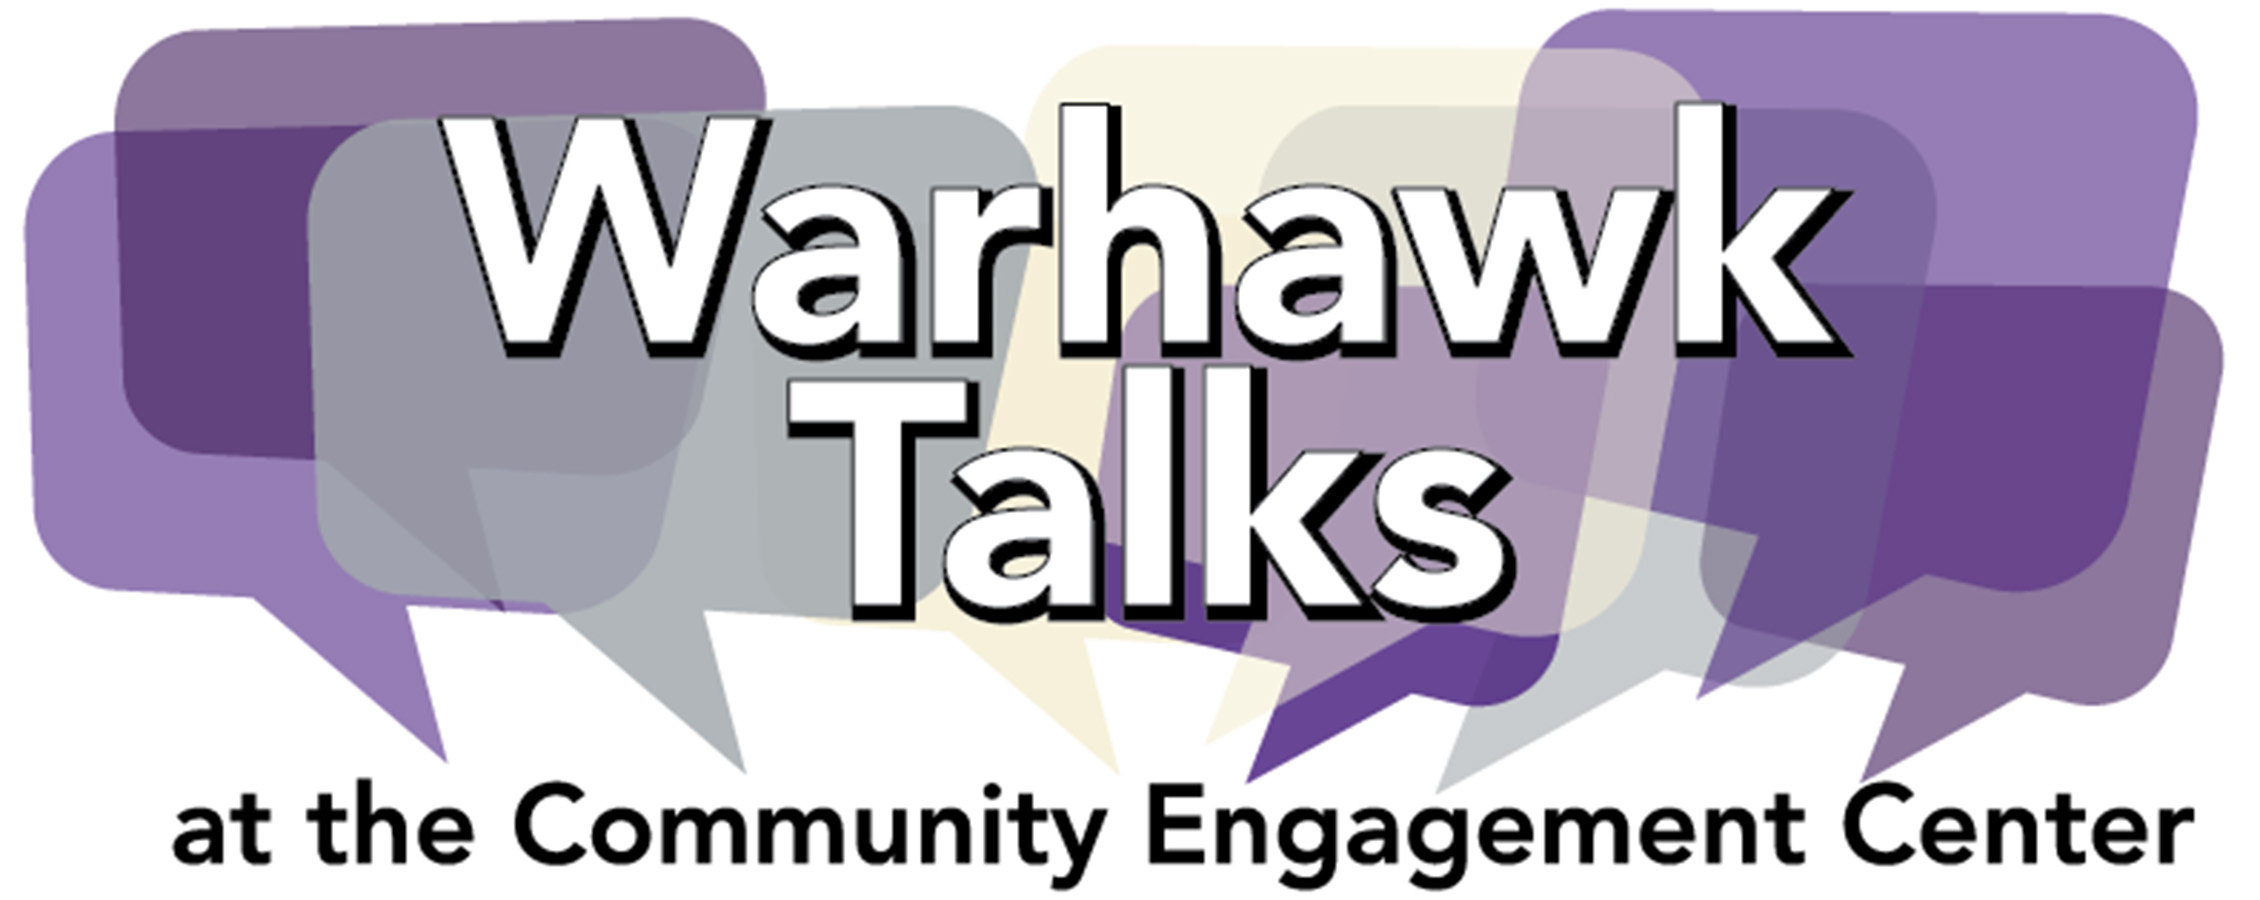 Warhawk Talks